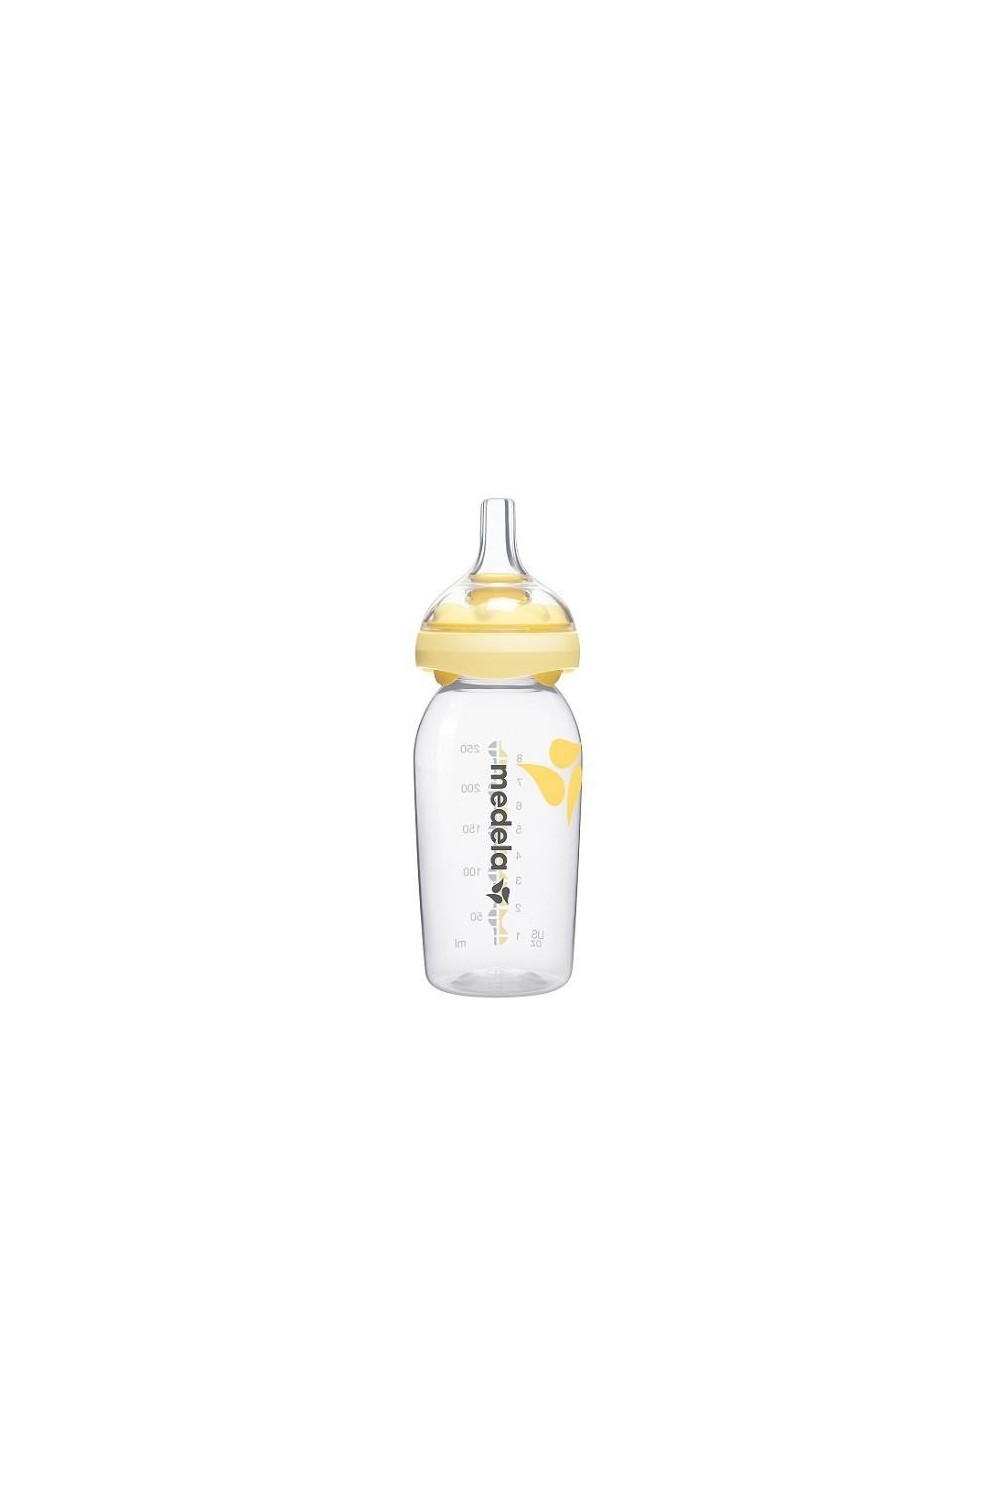 Medela Baby Bottle Calma Tetina Silicona 250ml 1ud